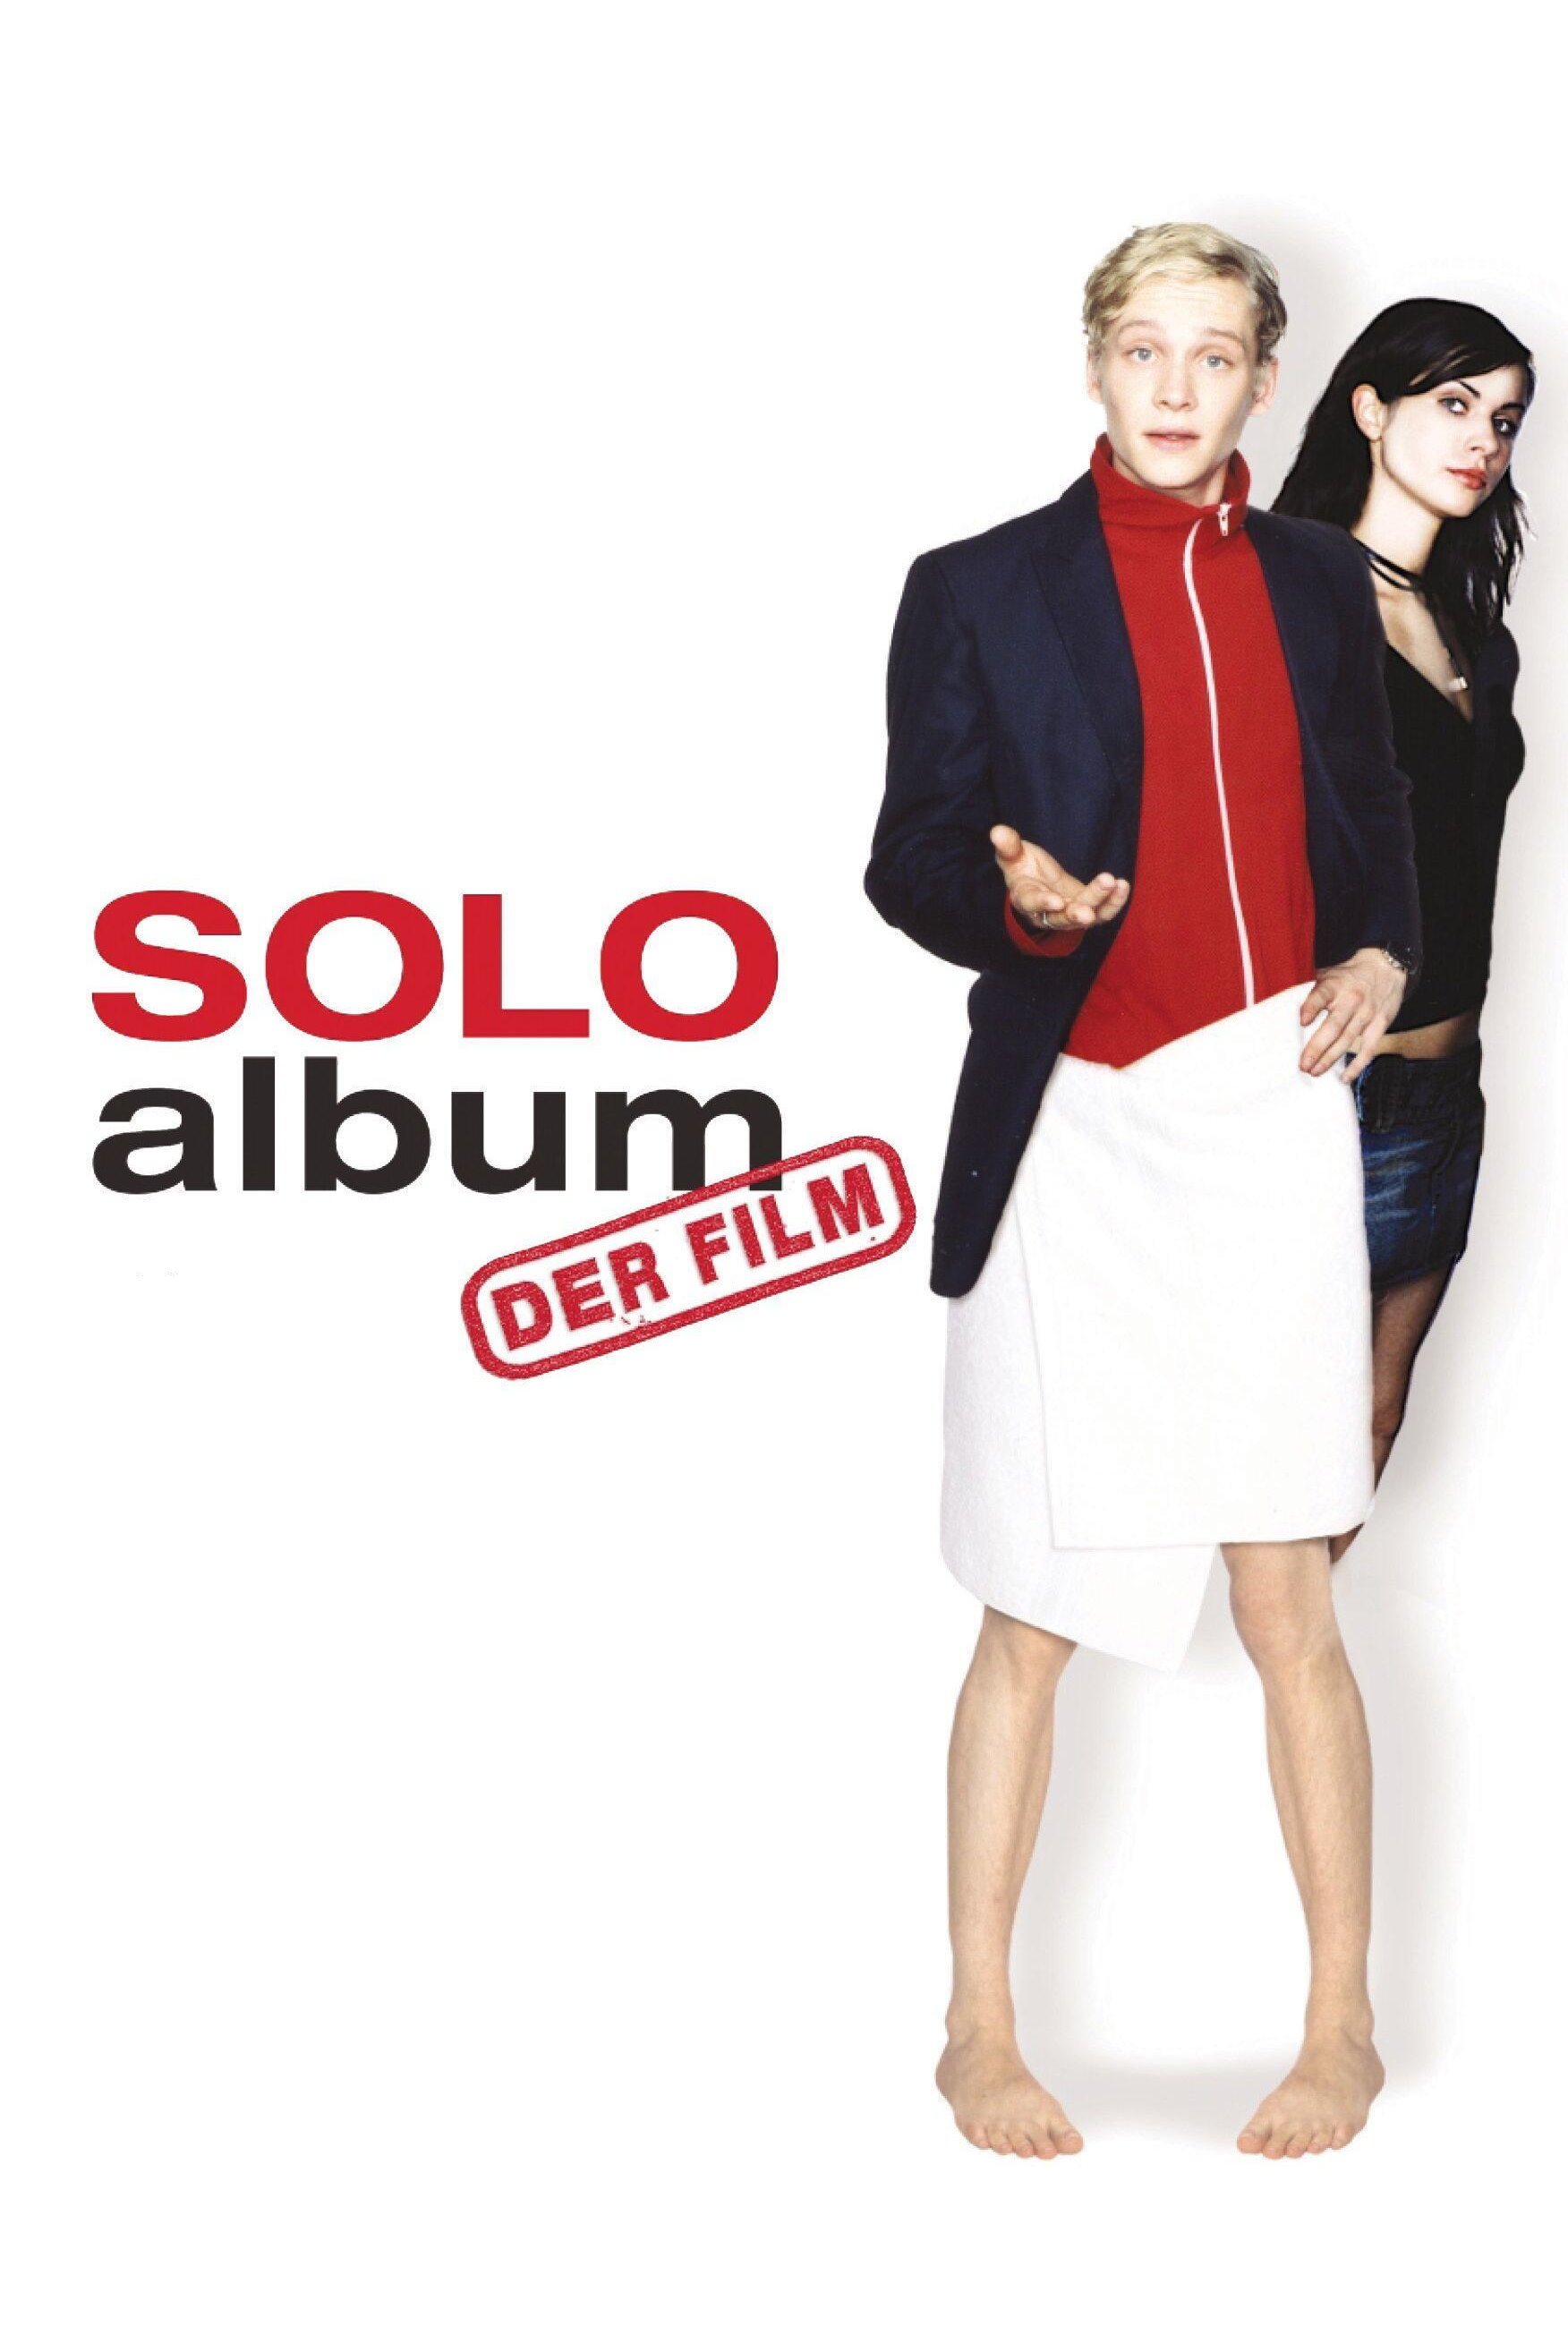 Plakat von "Soloalbum"